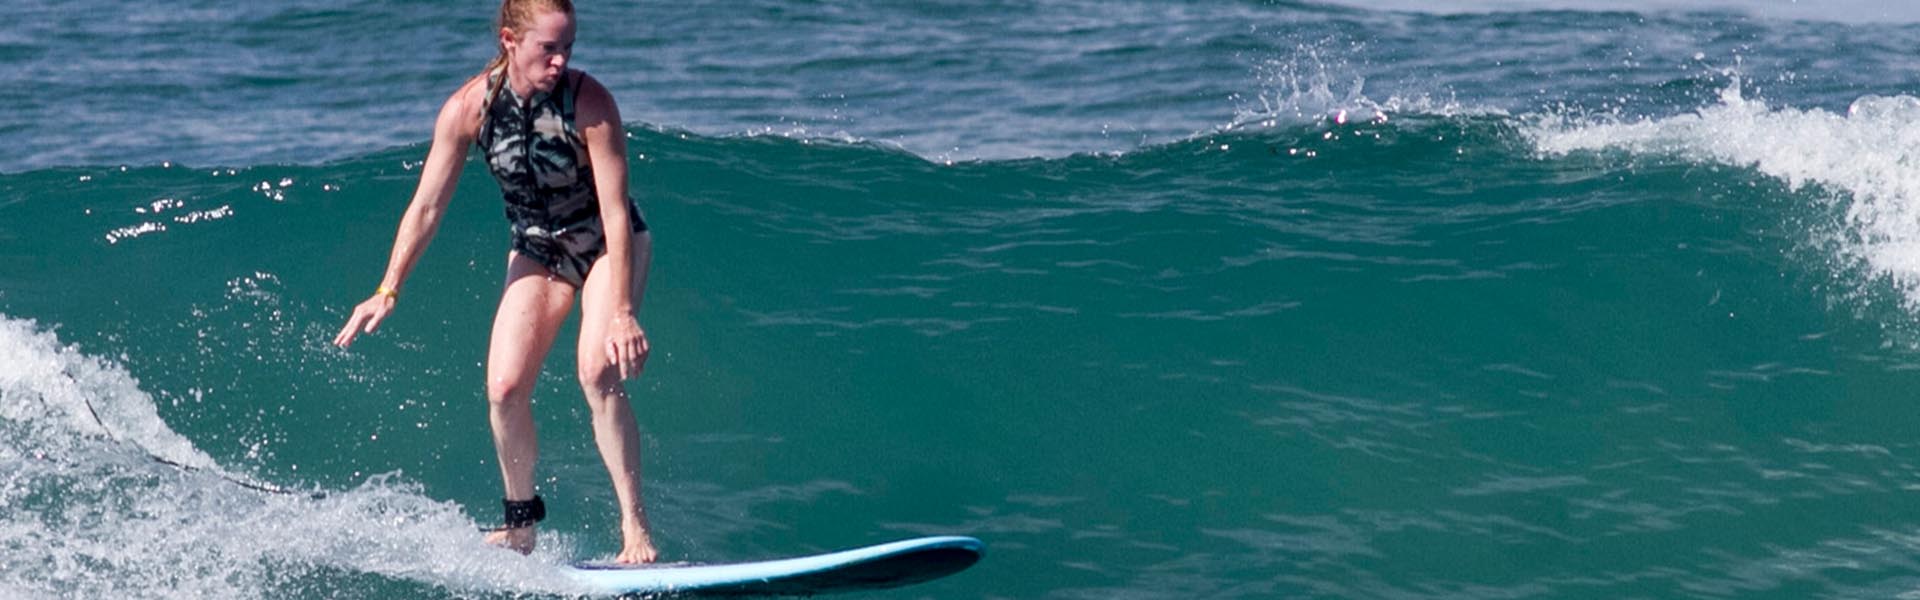 Excursion de Surf en Bote | Step-off Surf Adventure | Vallarta Surf Tours